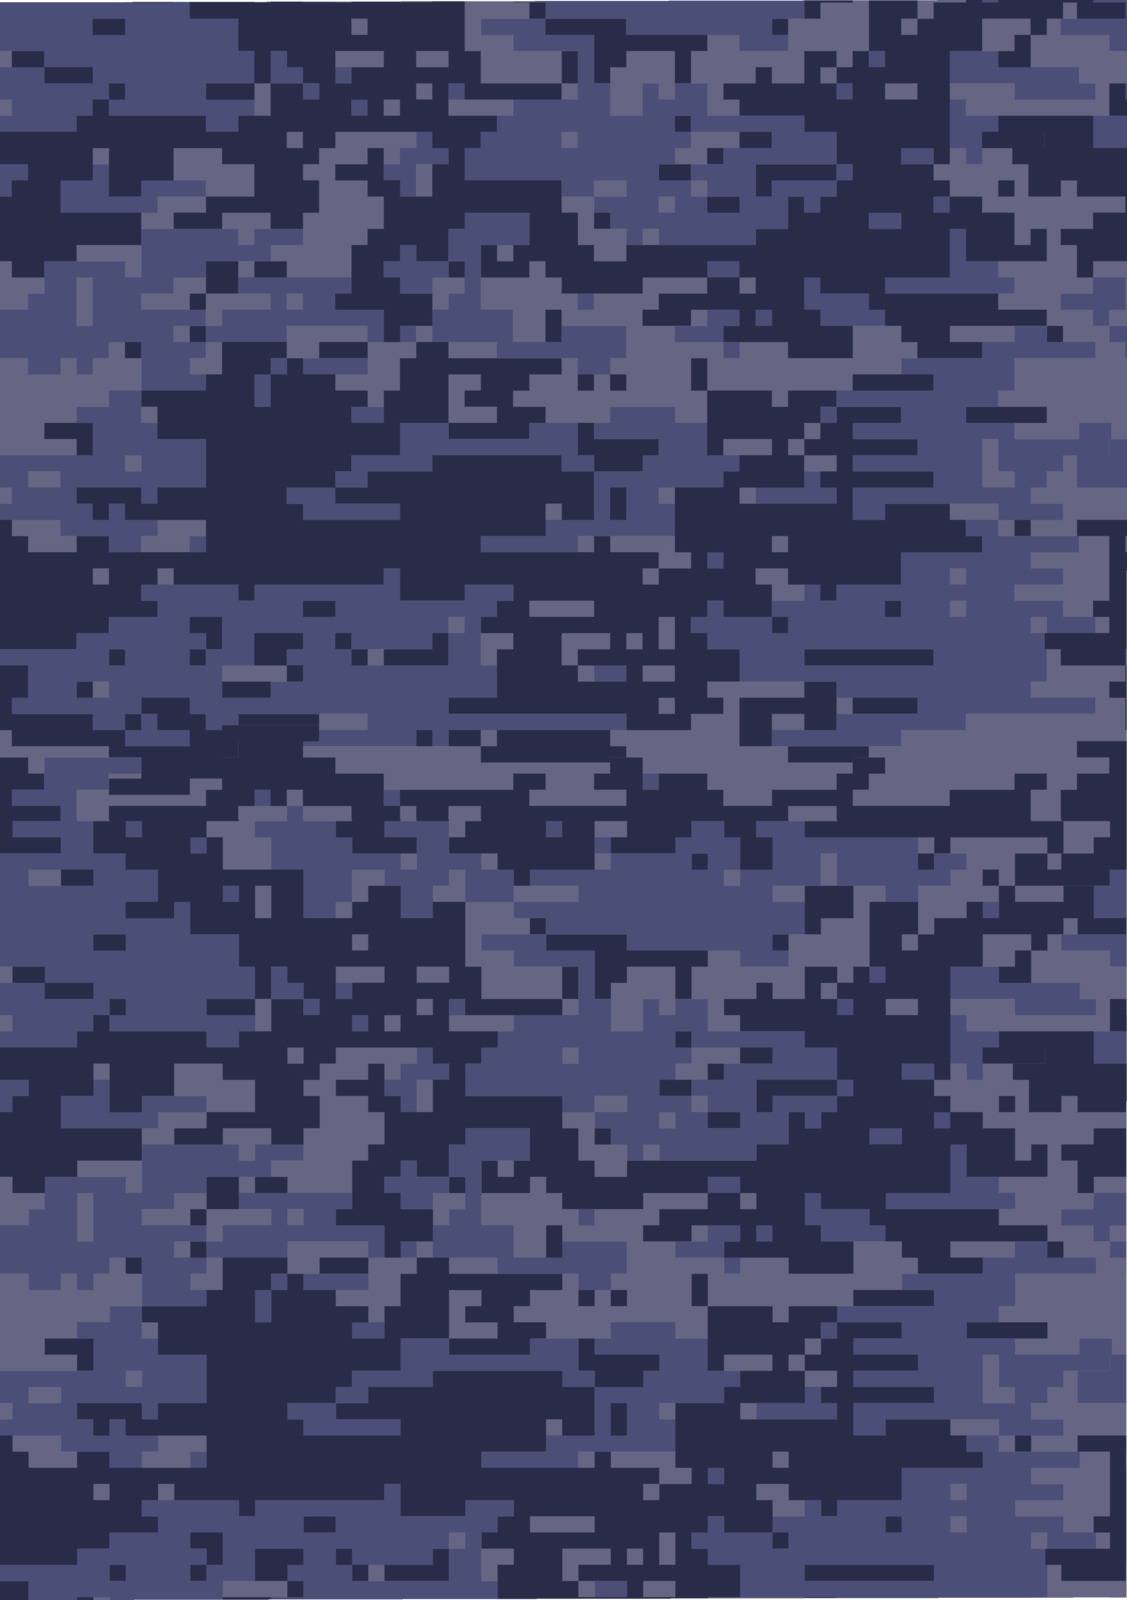 Digital dark blue military camouflage textured background